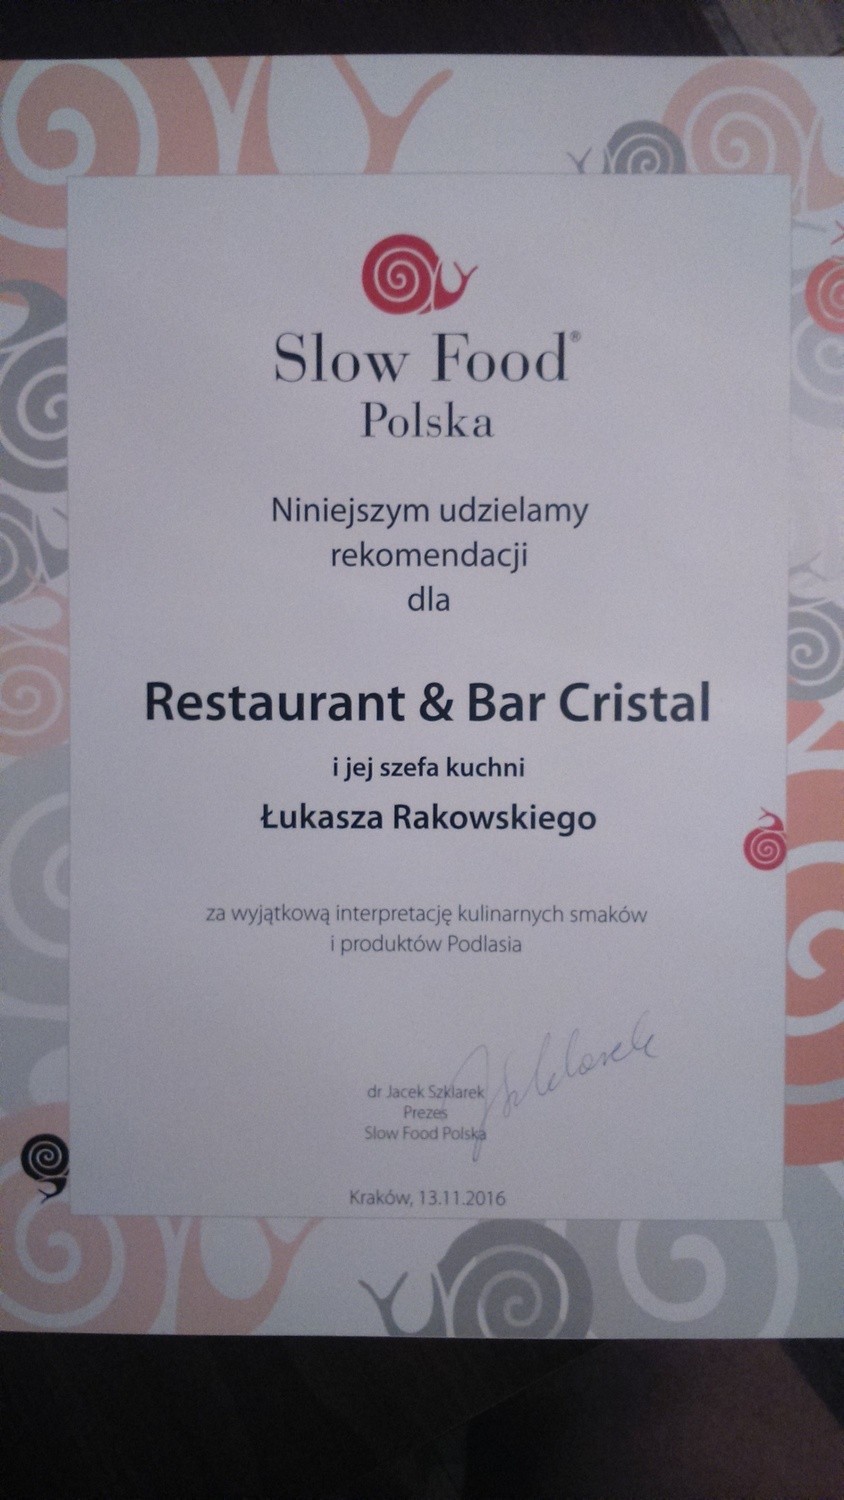 Restauracja Cristal jako pierwsza z województwa podlaskiego otrzymała rekomendację Slow Food Polska